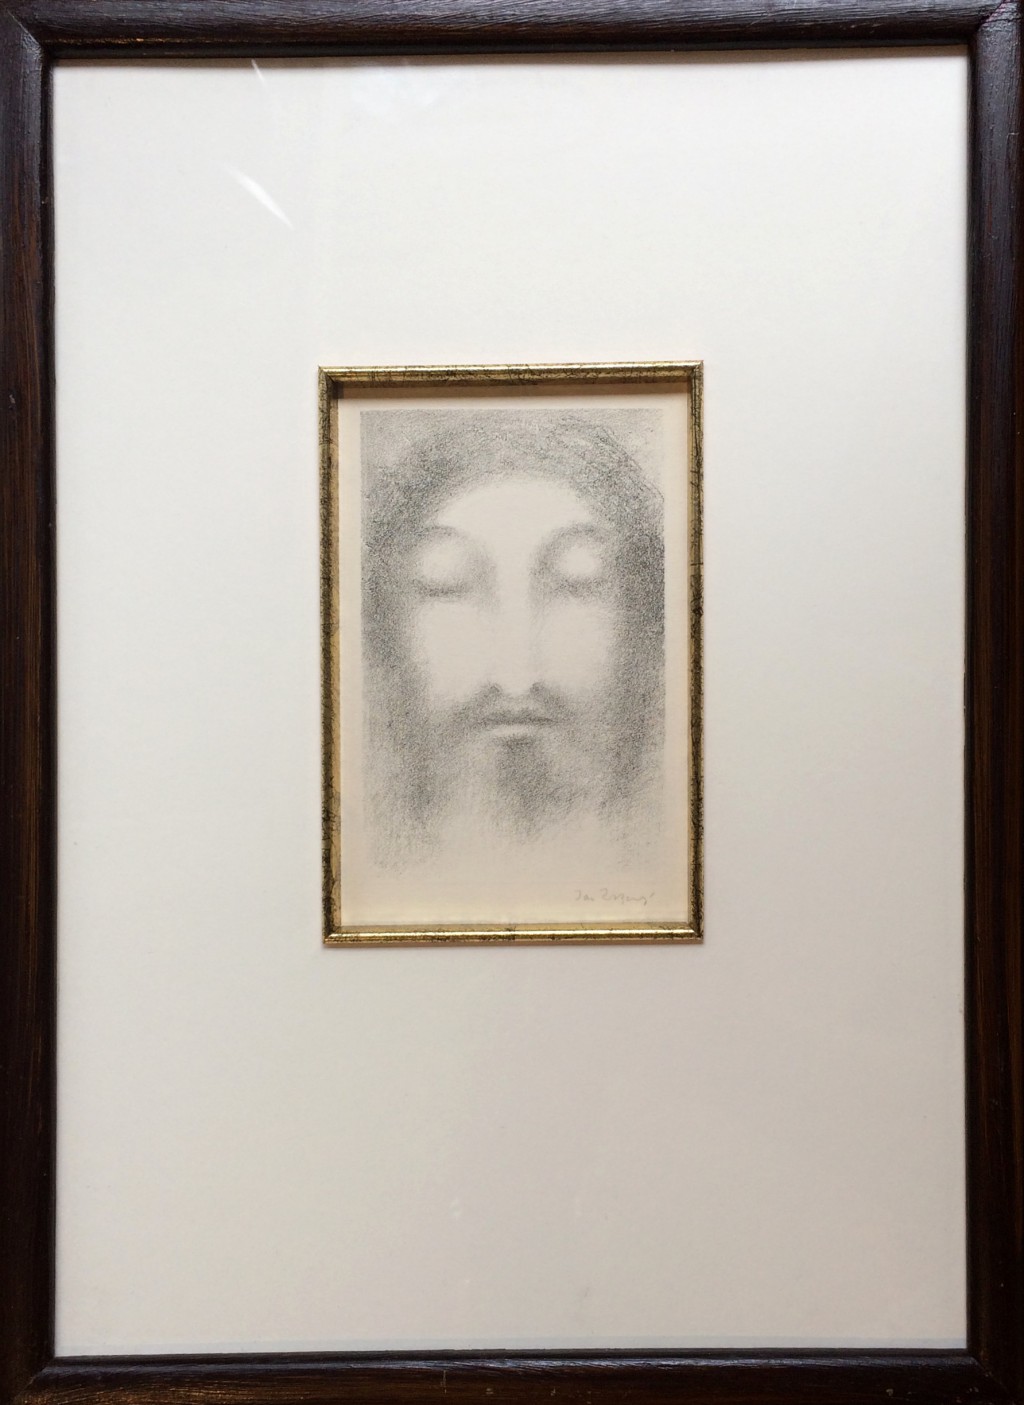 Zrzavý Jan (1890 - 1977) : Ježíš Kristus